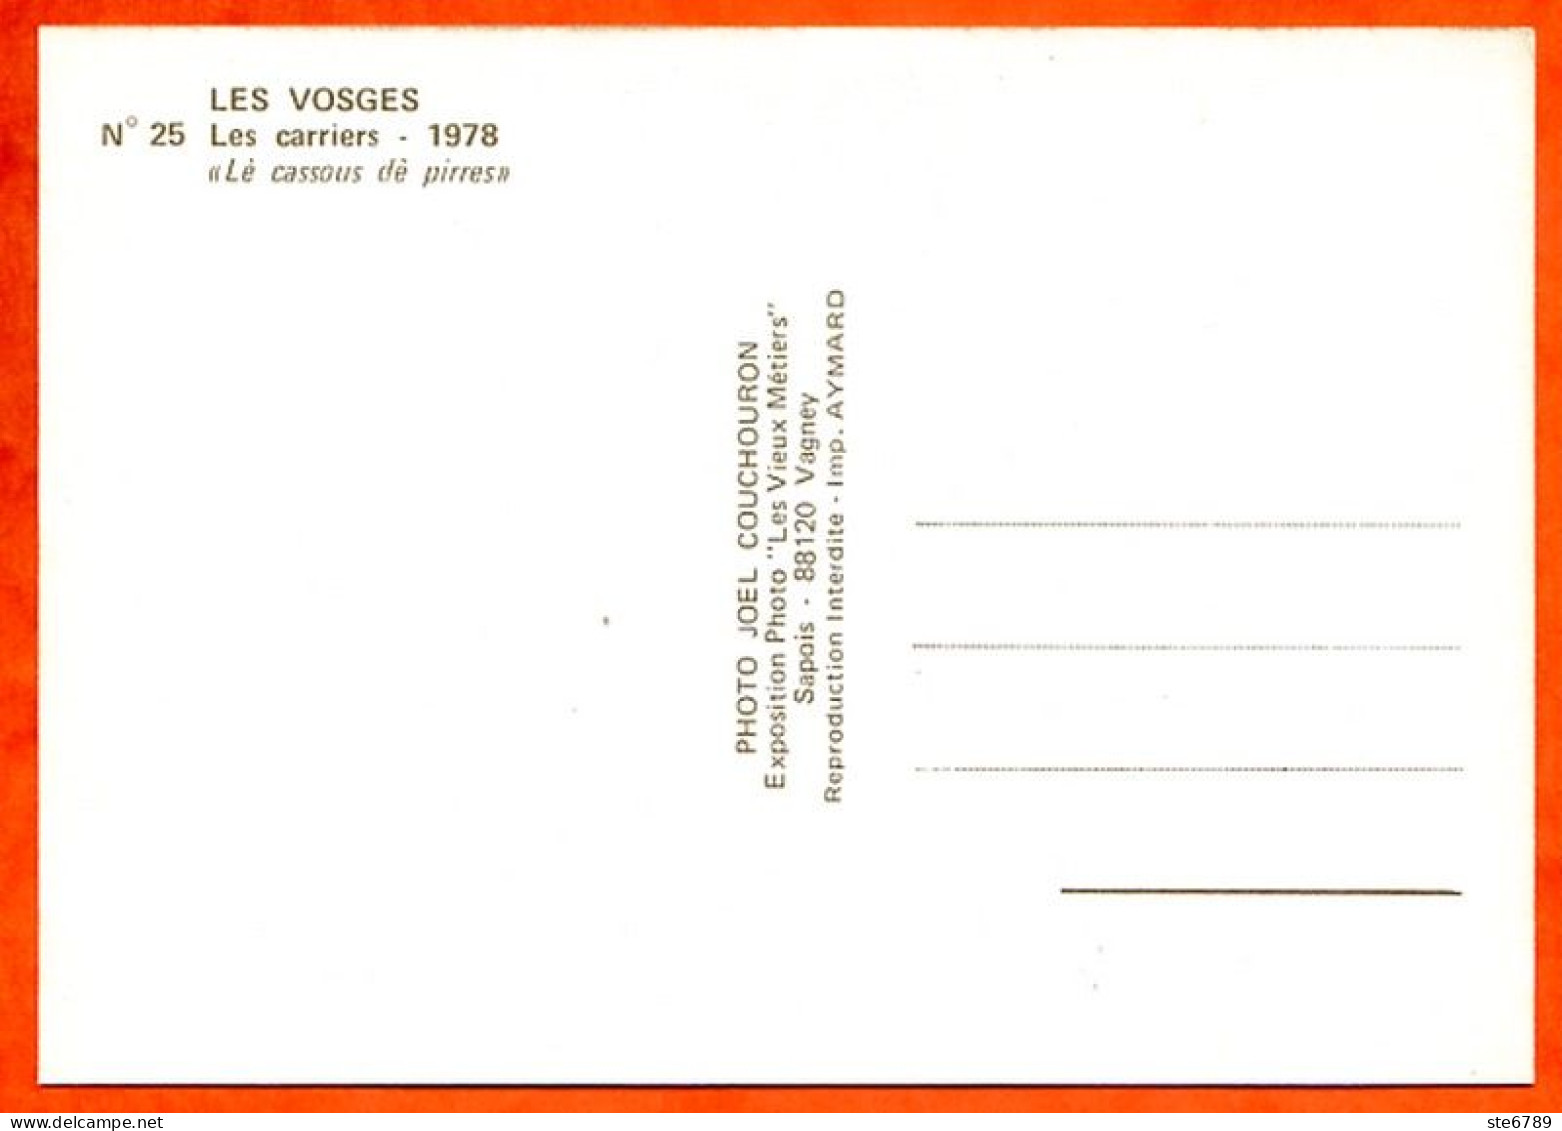 48 cartes vieux métiers Série complete Expostion Photo 88 Vosges Artisanat Paysans Bois Fenaison Chevaux Aymard ste6789